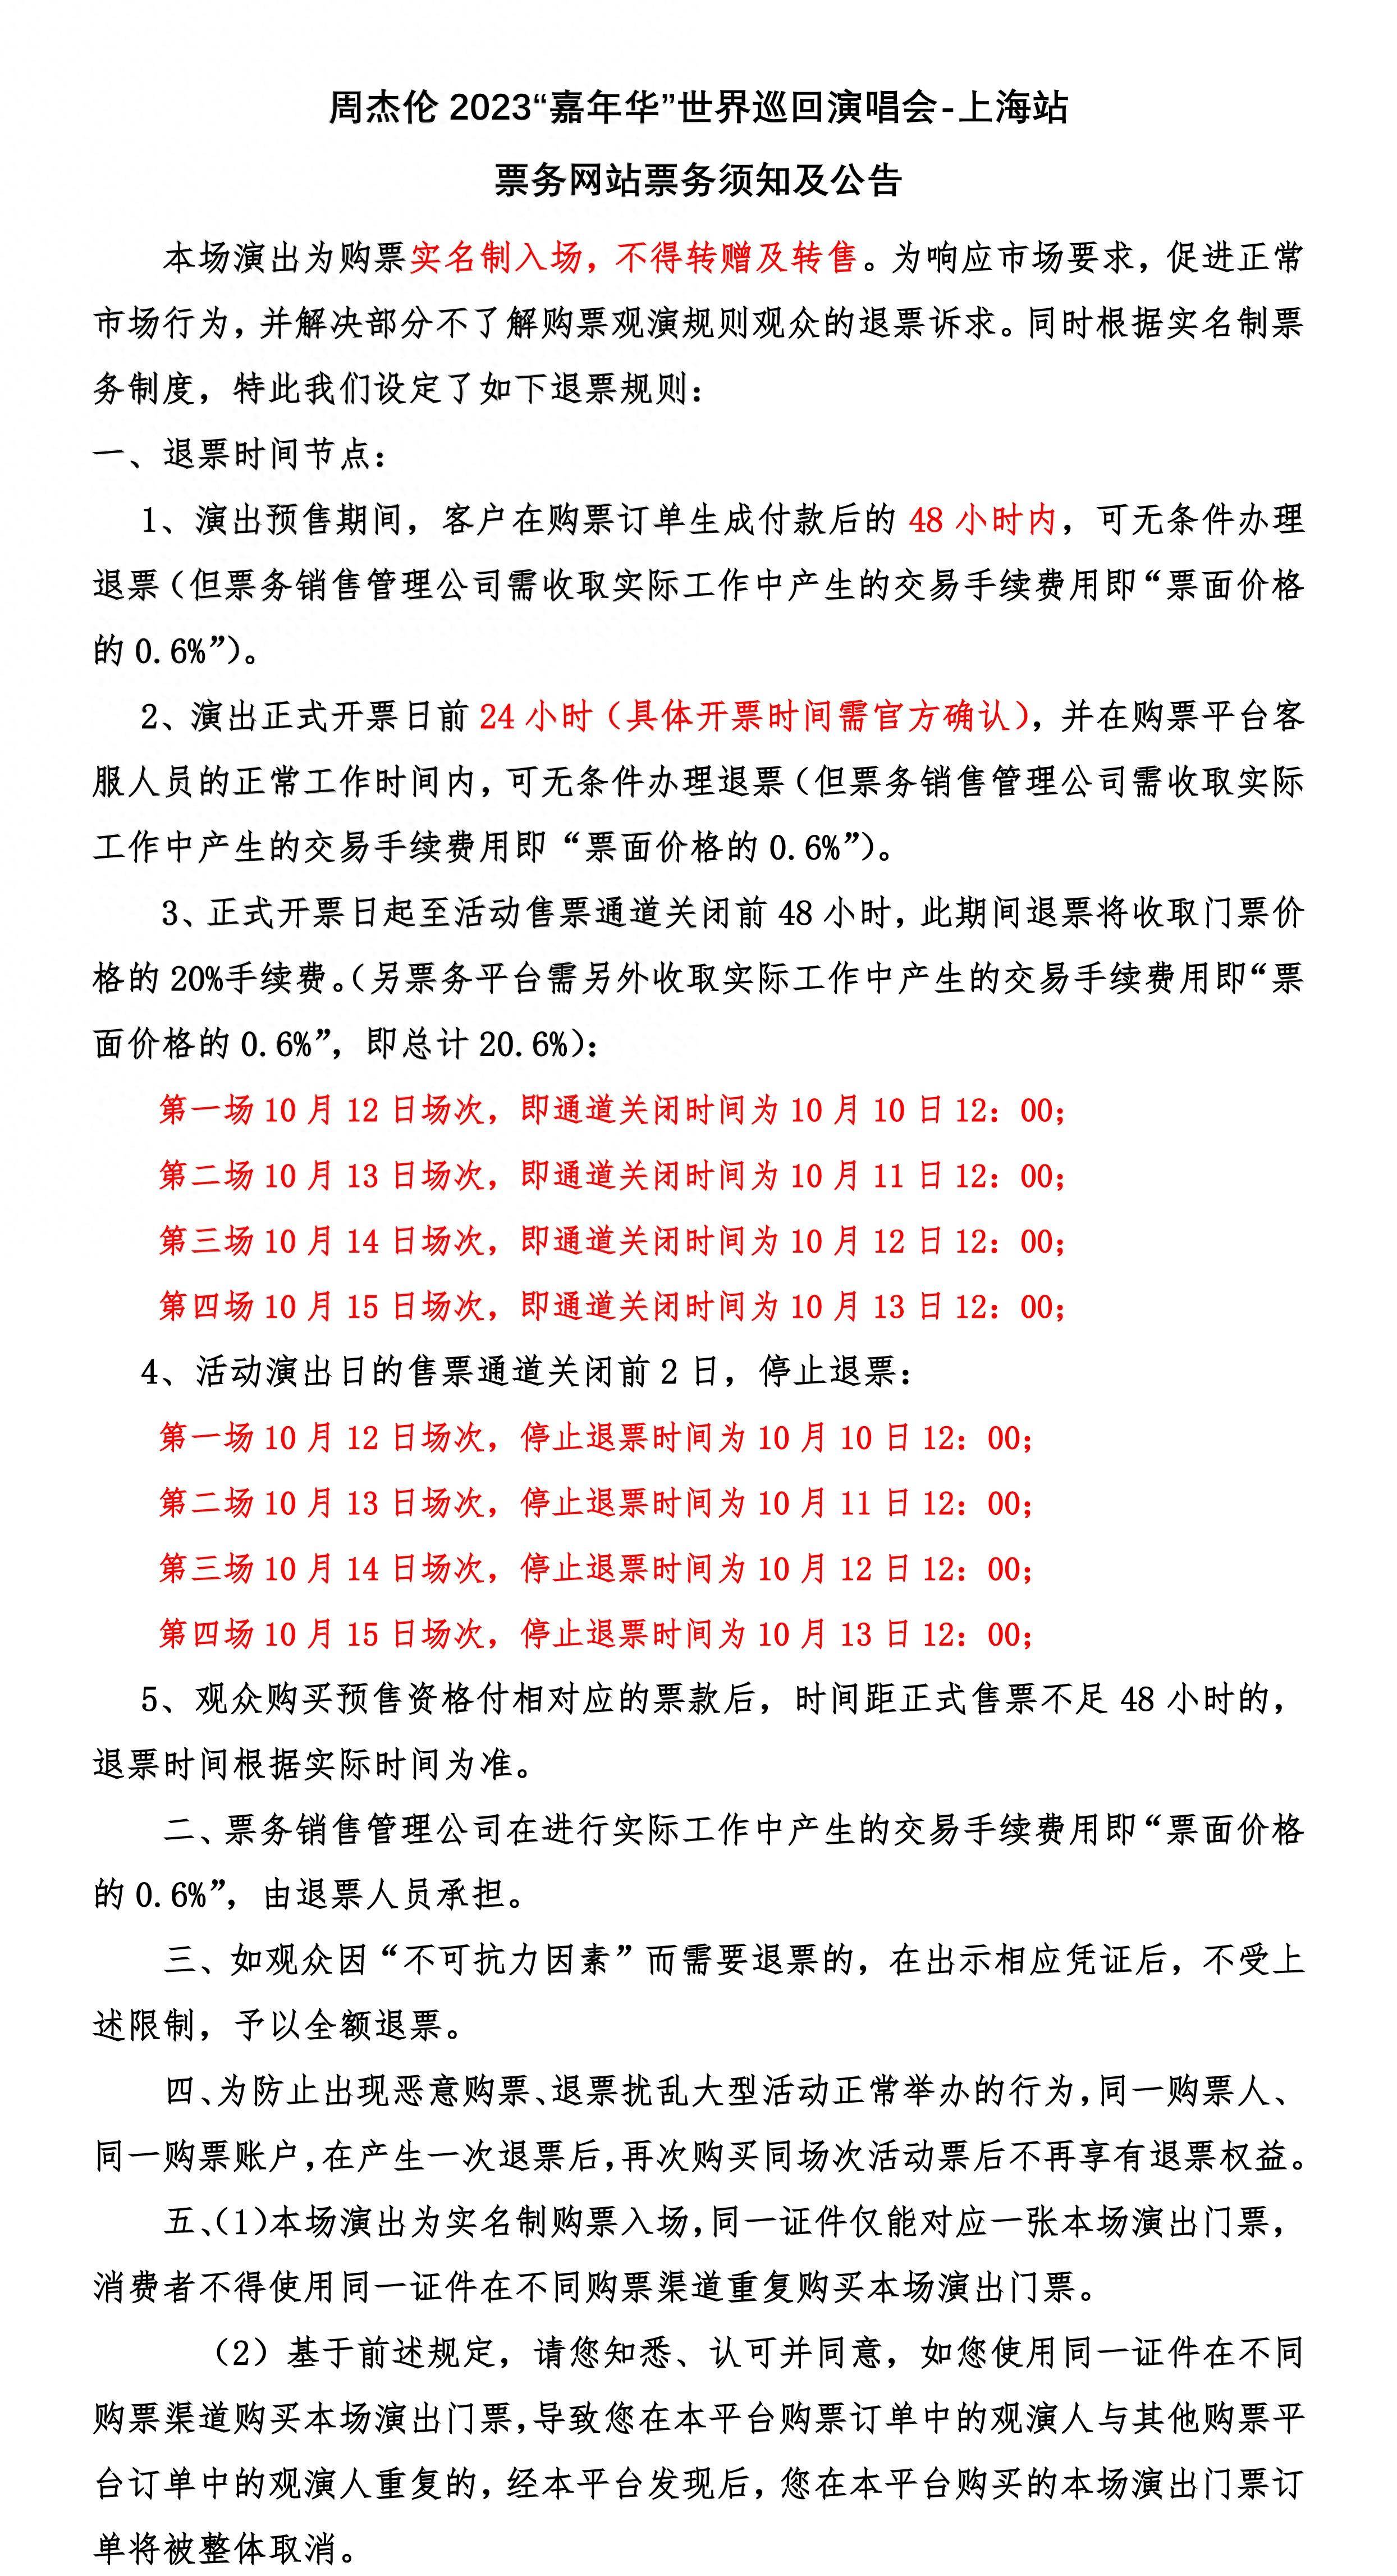 本次上海演唱会采用强实名制,购票人,门票和身份证必须一致